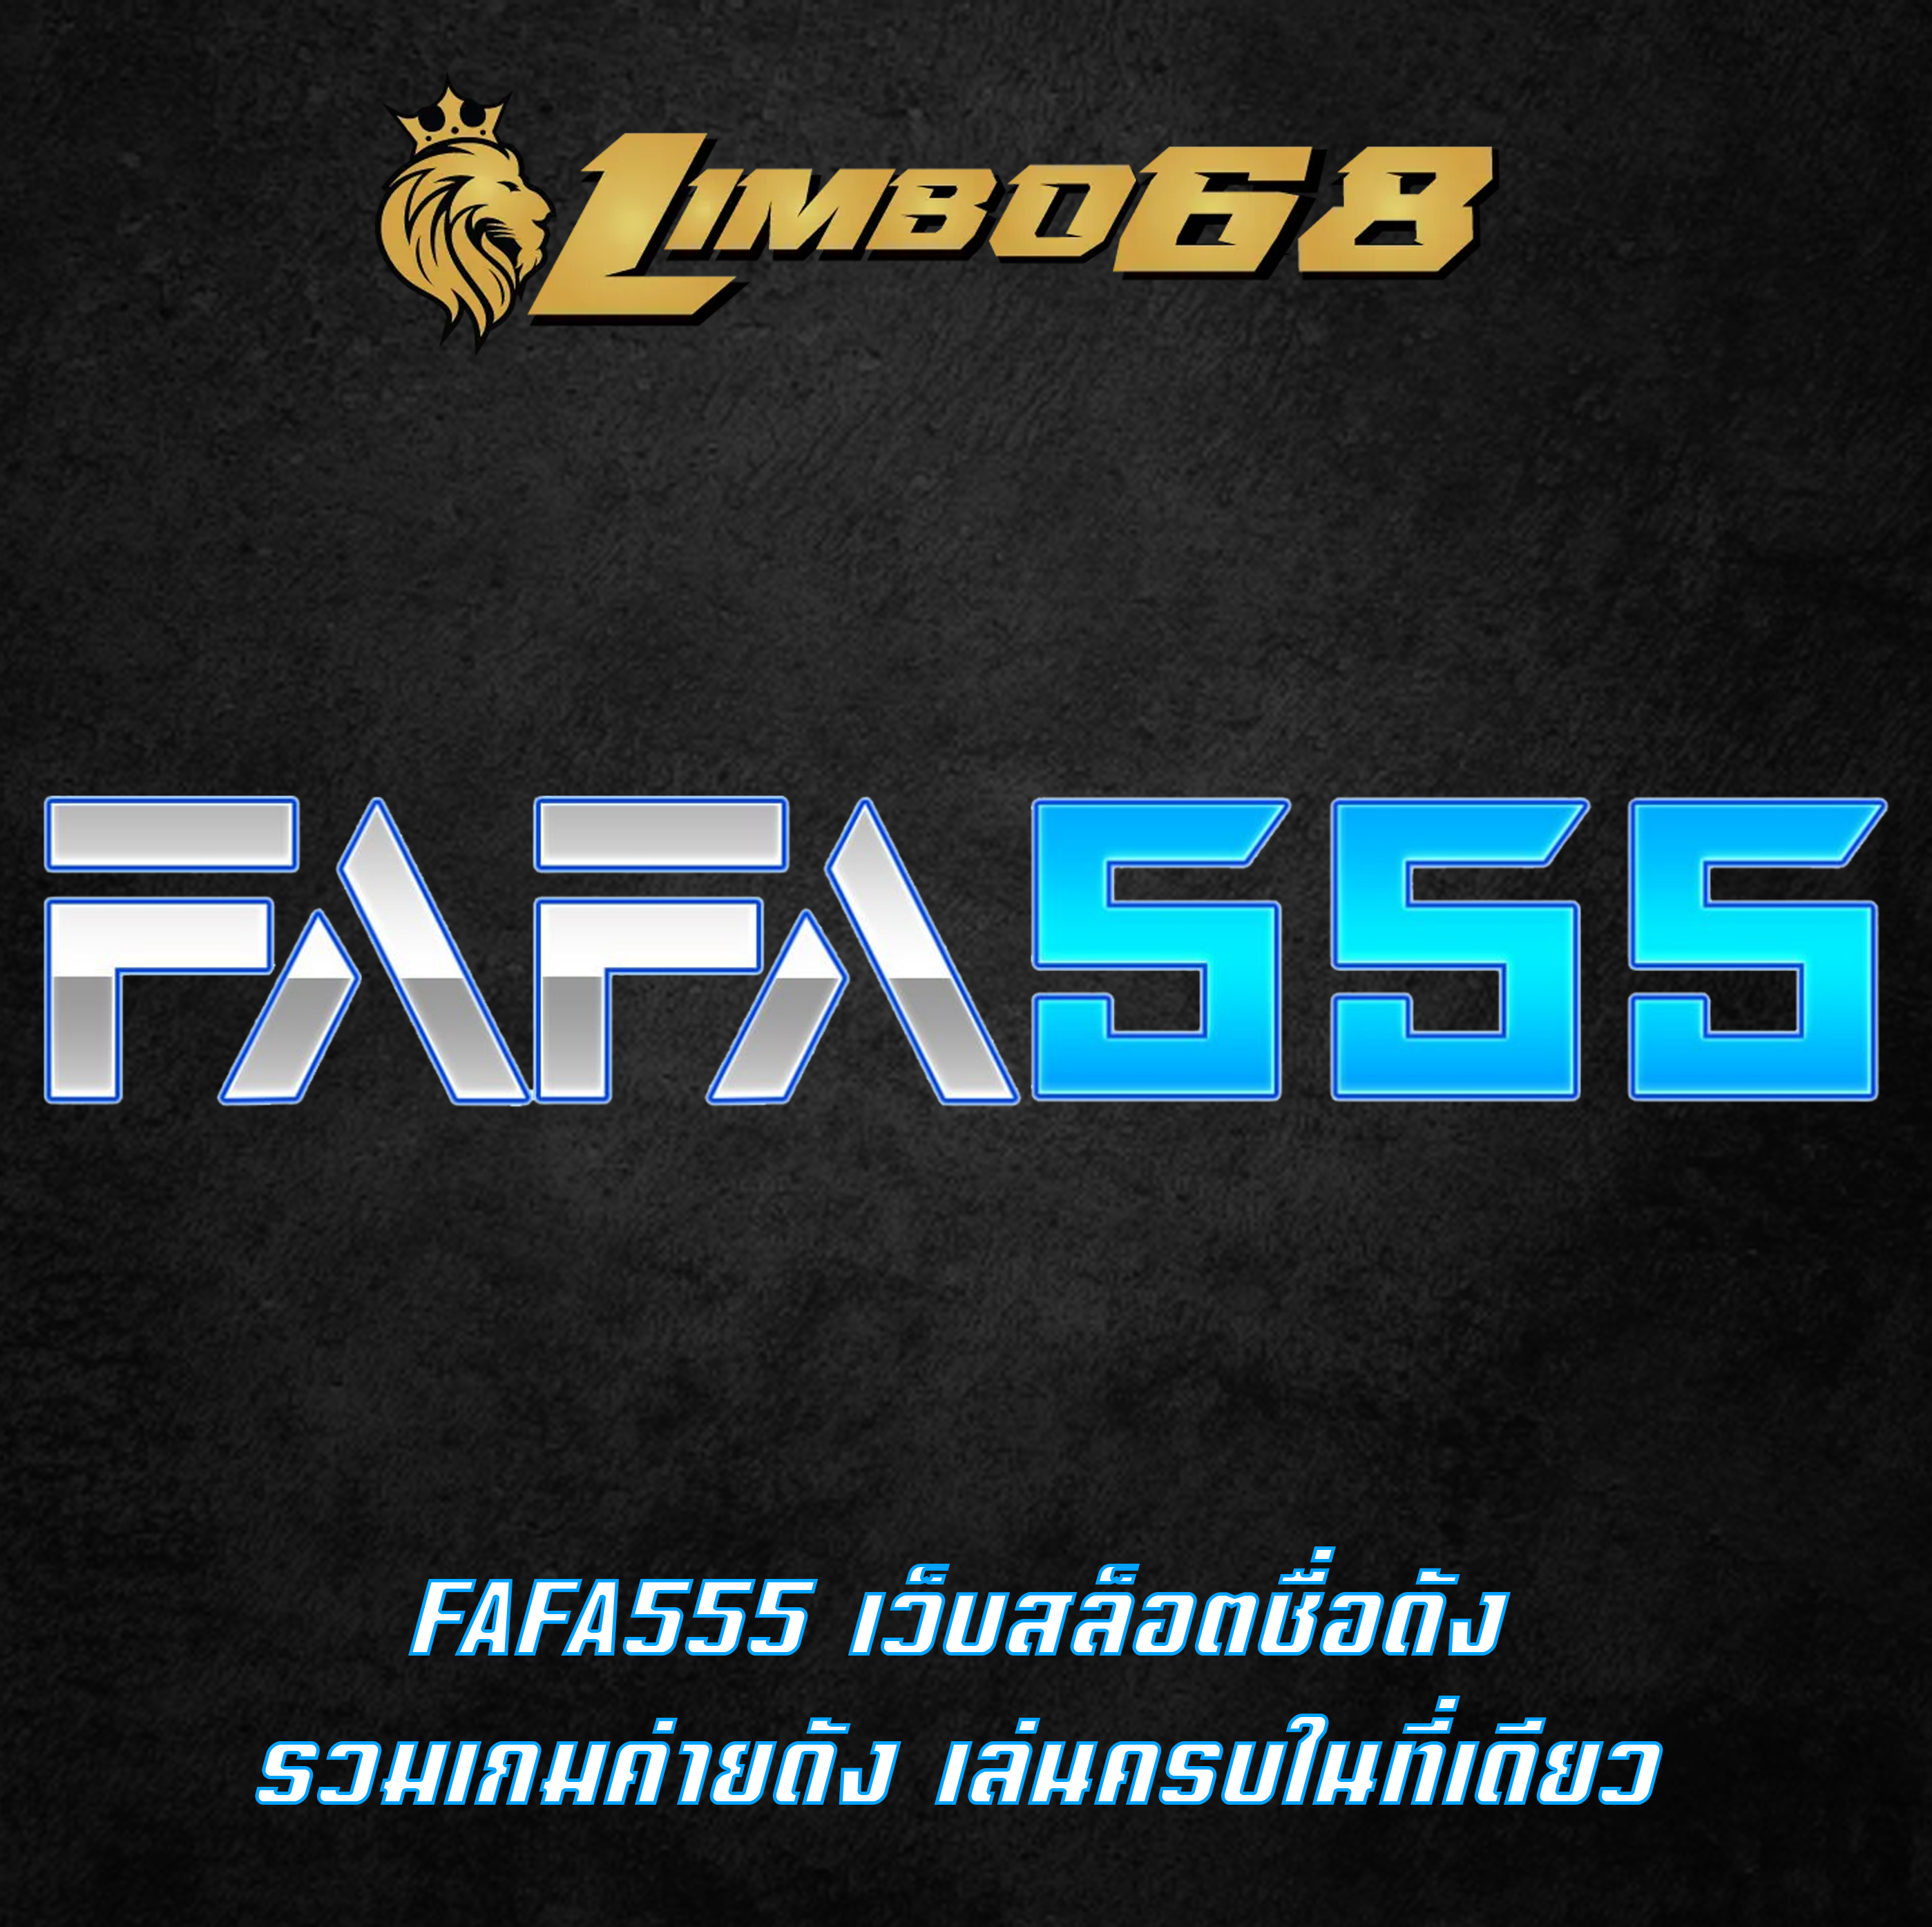 FAFA555